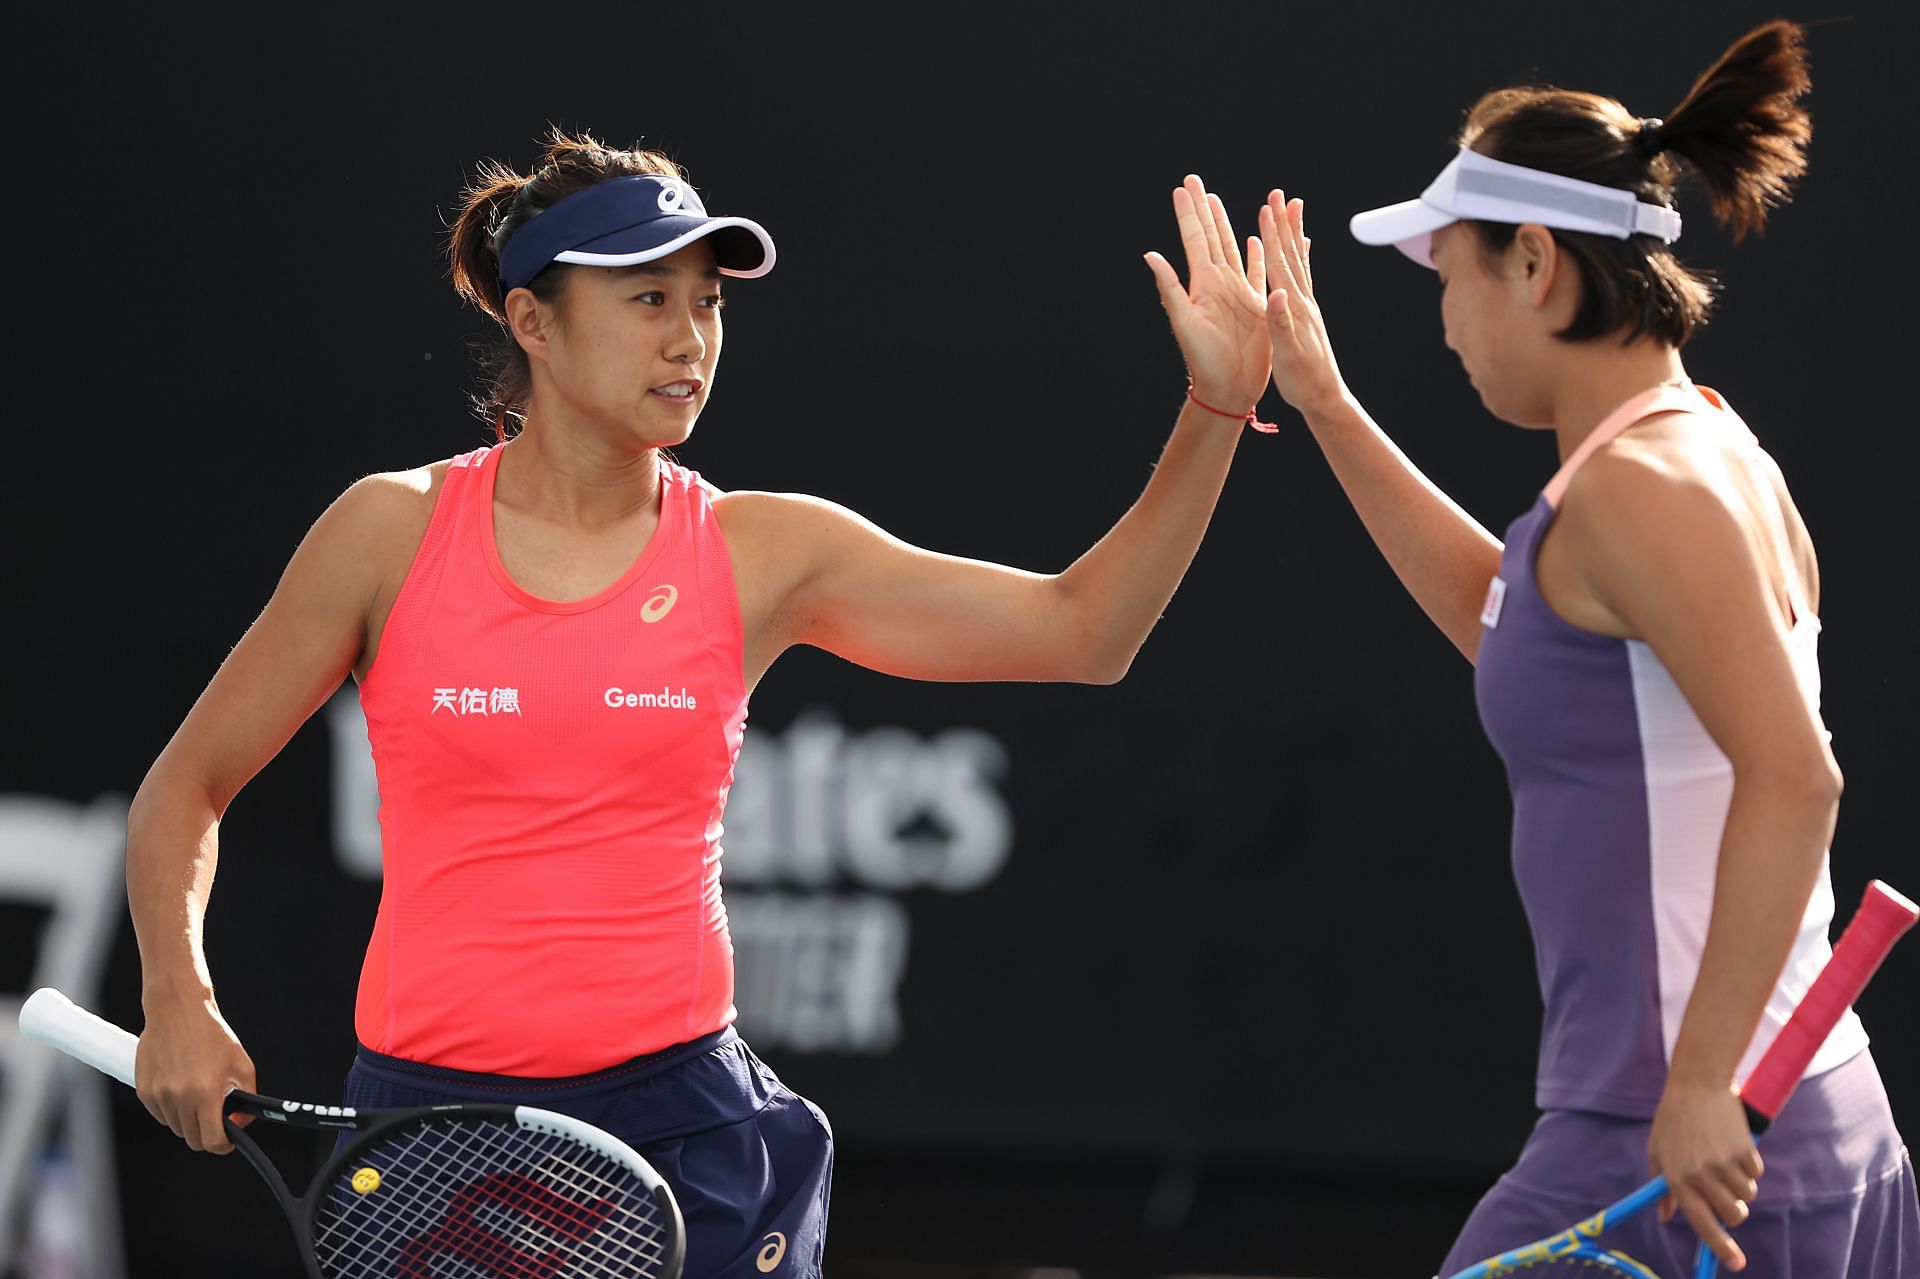 Peng Shuai and Zhang Shuai at the 2020 Australian Open - Day 4